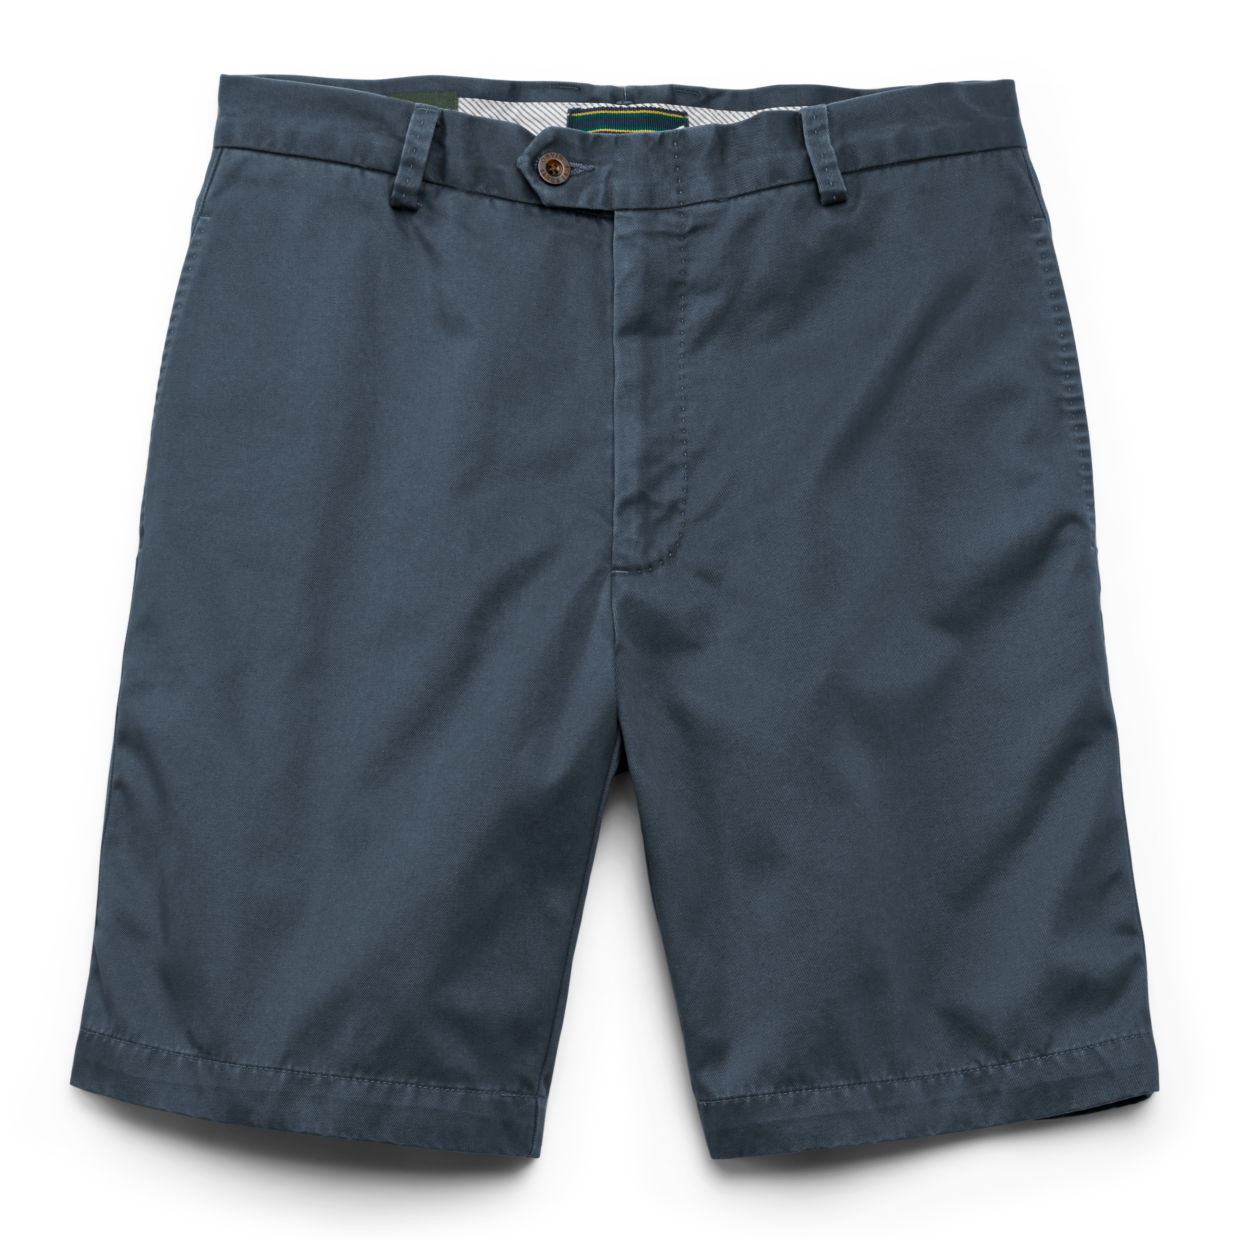 Angler Chino Shorts